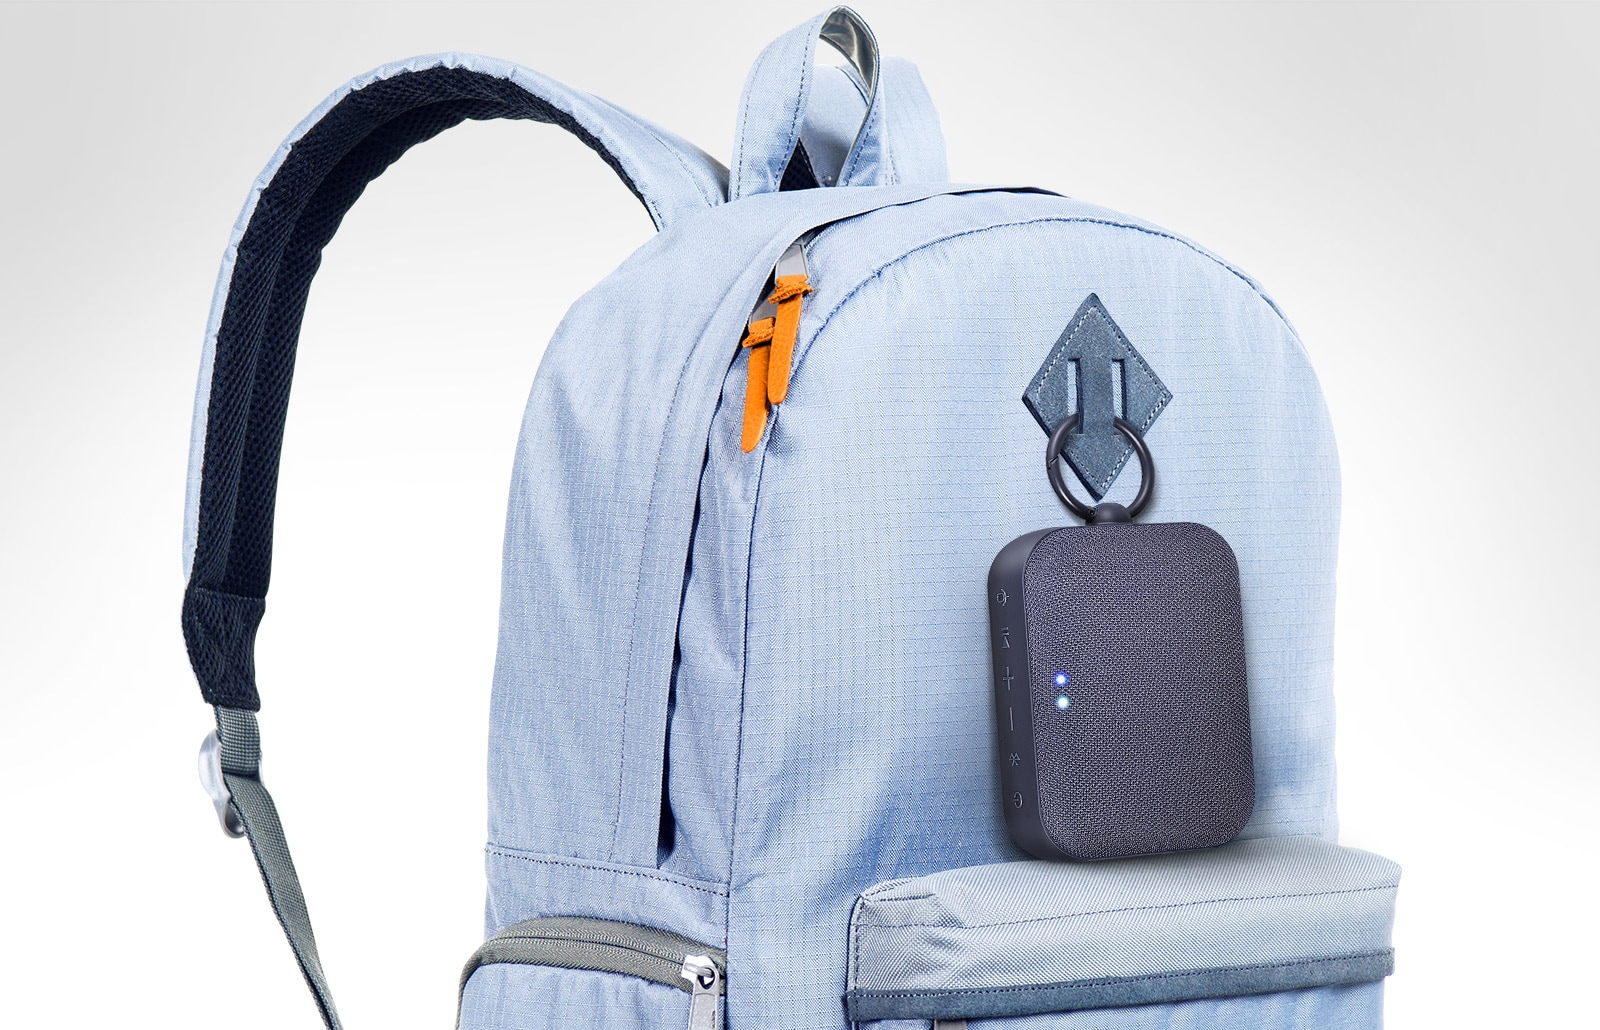 LG XBOOM Go PN1 prikvačen je na ruksaku nebesko plave boje.